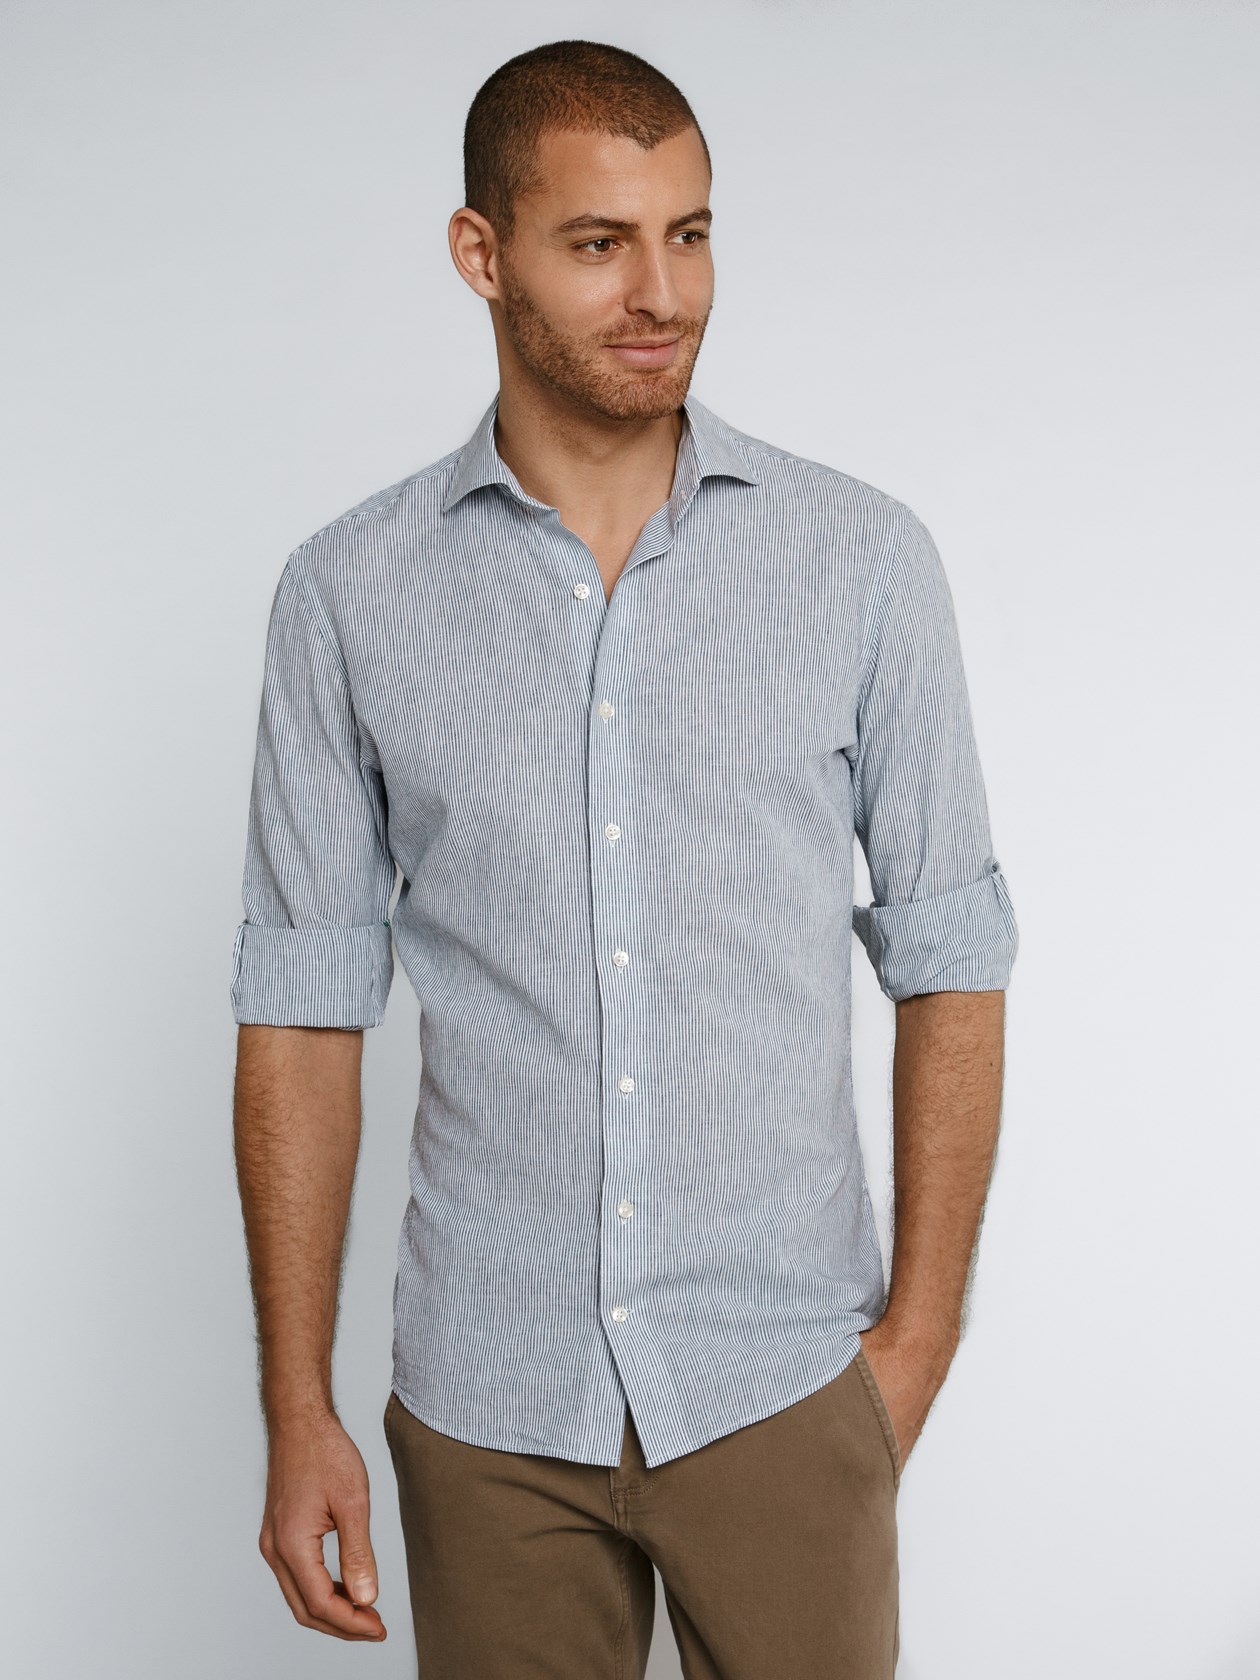 Linen Blend - Dark Blue, Striped Shirt